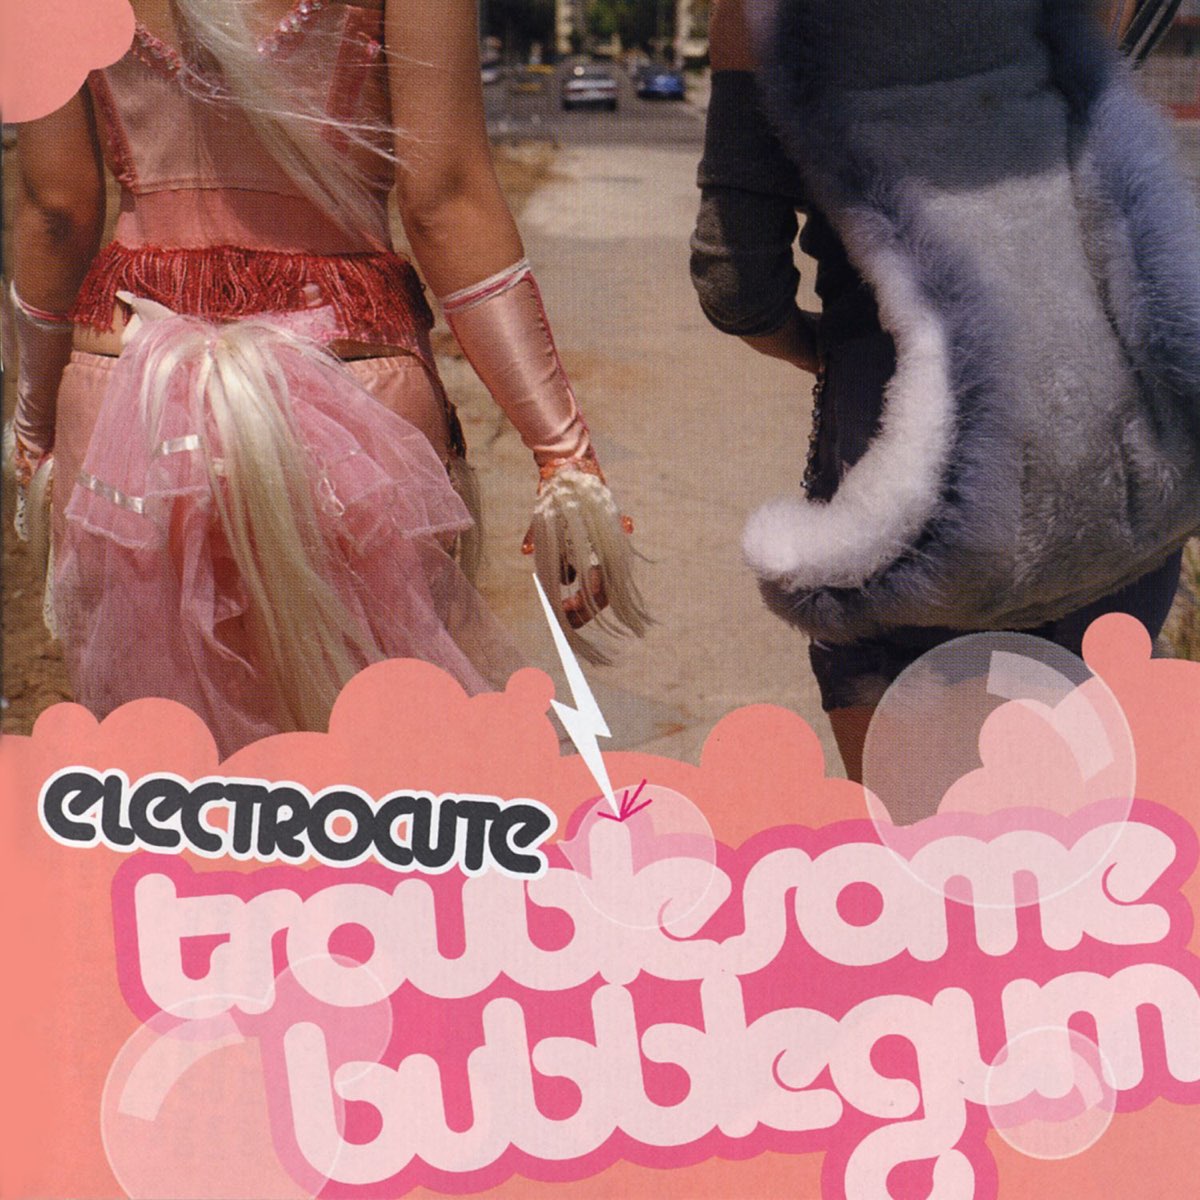 Troublesome Bubblegum by Electrocute